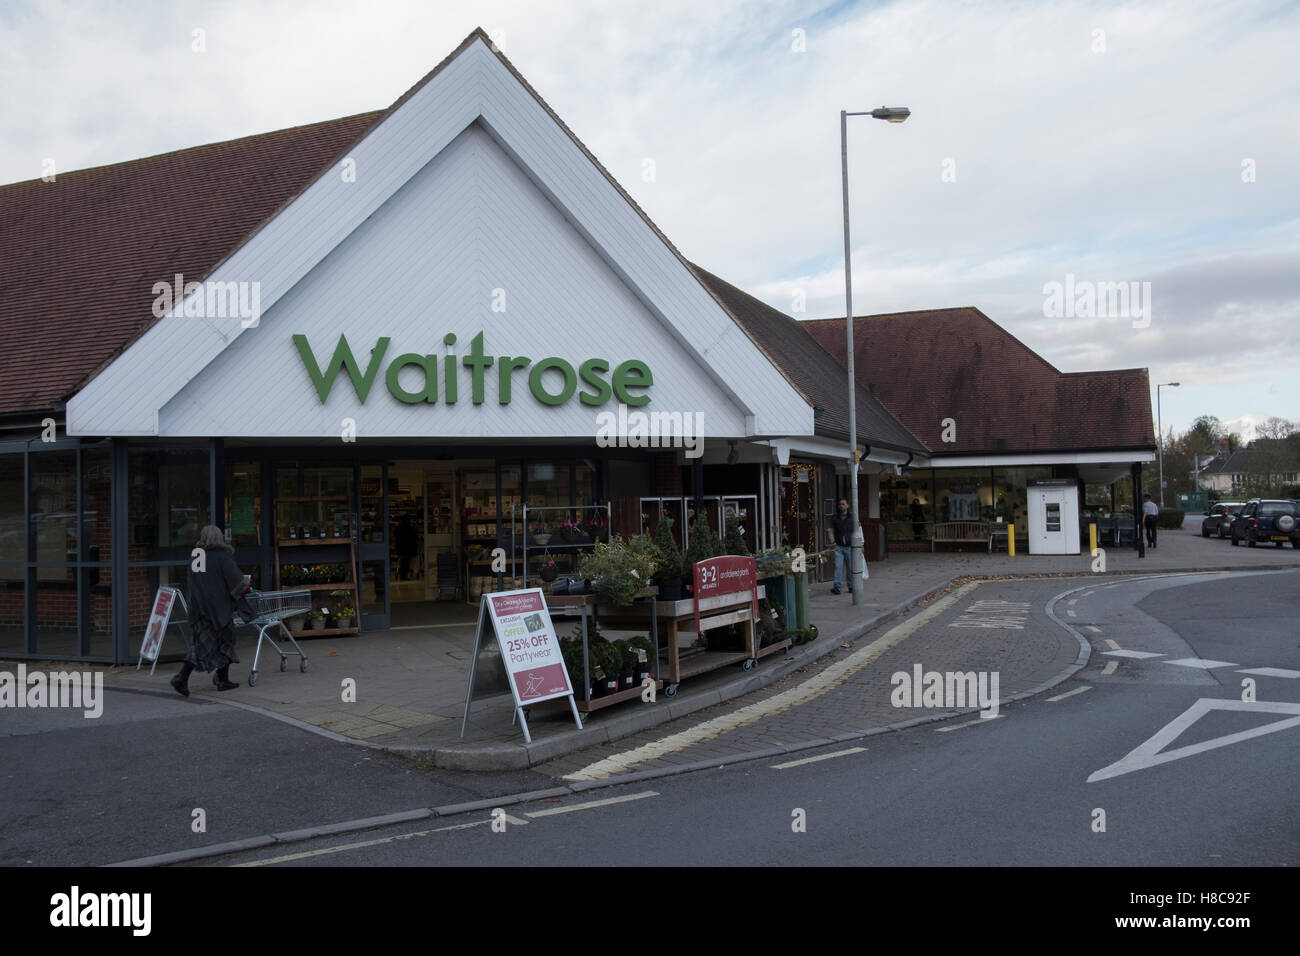 Waitrose supermarket in Gillingham Dorset, UK Stock Photo